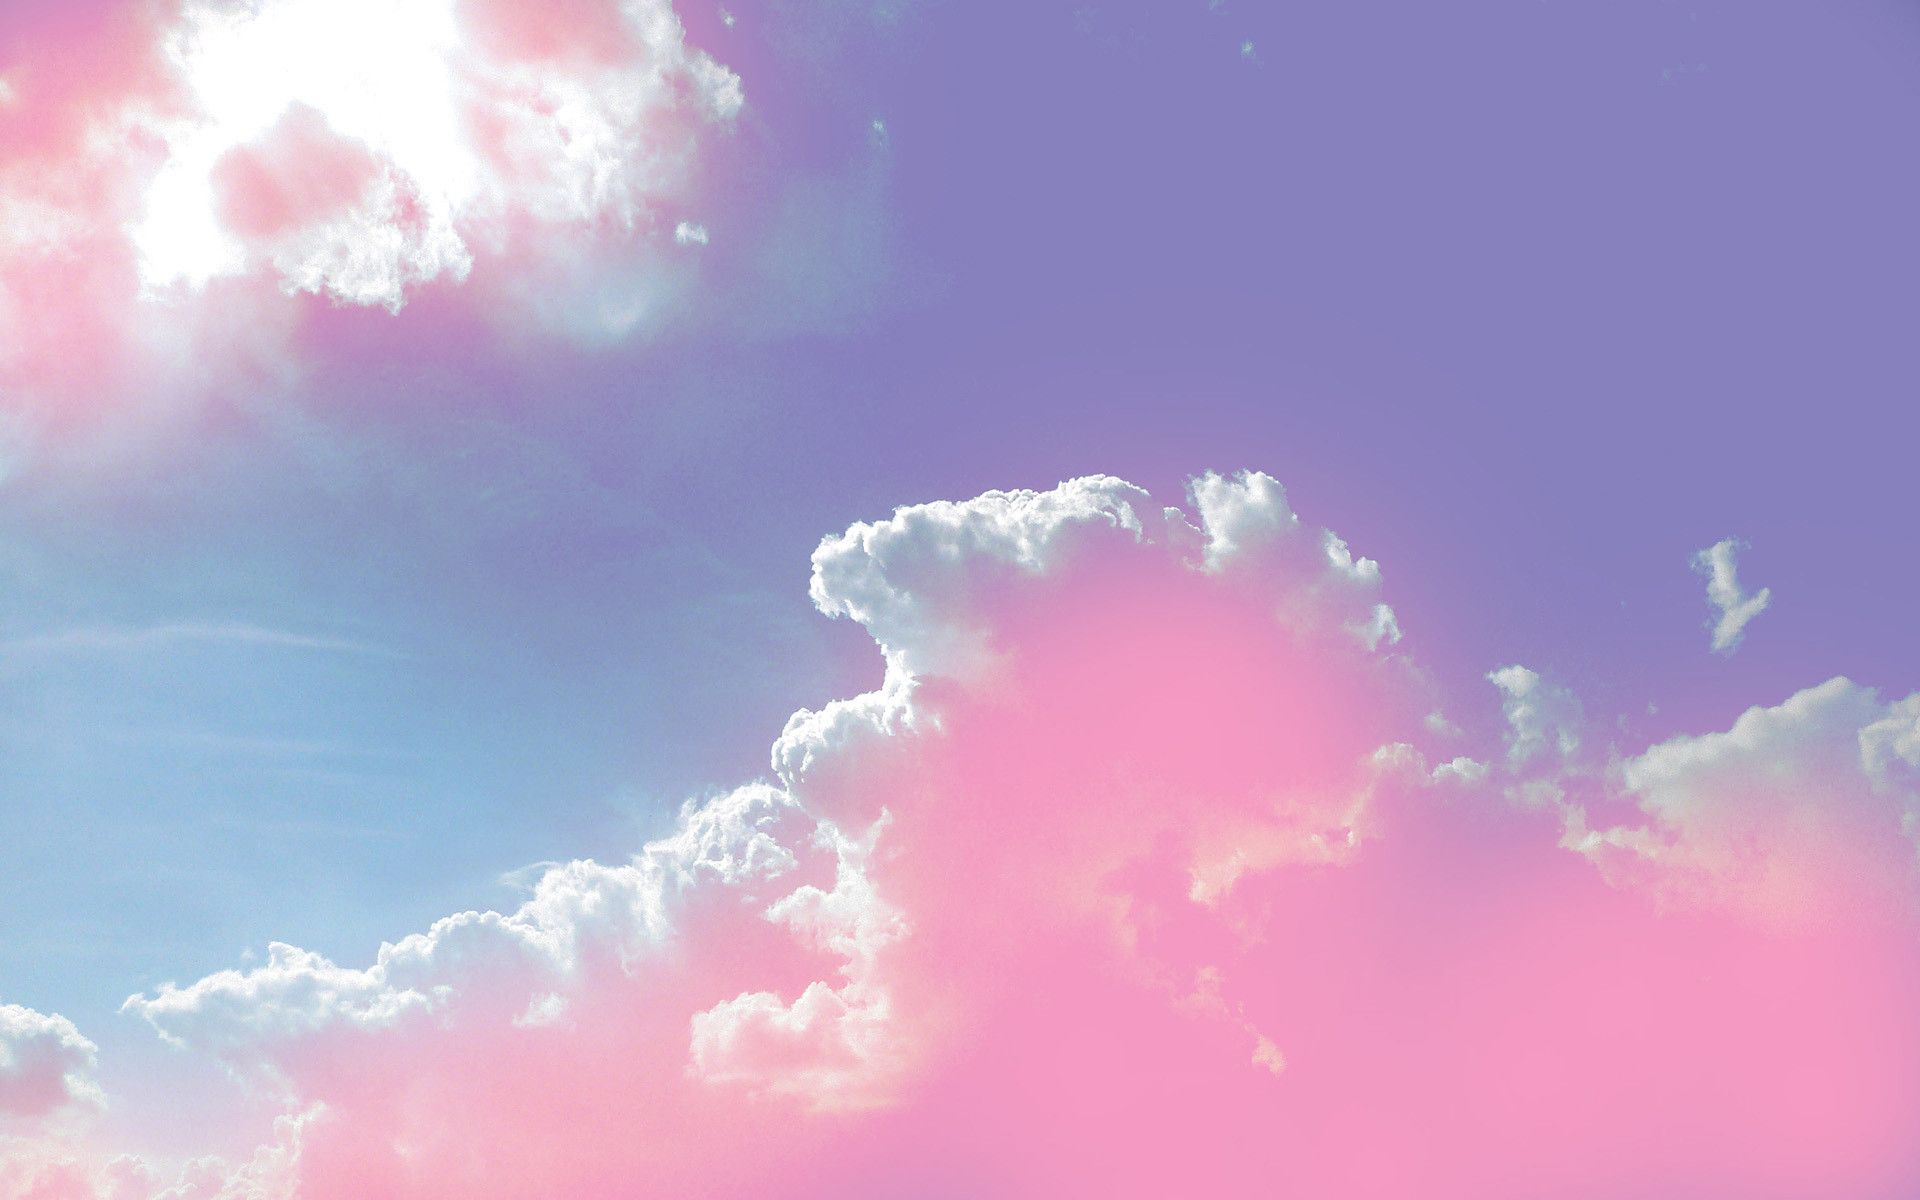 Tổng hợp ảnh bầu trời xanh - hồng cute - đẹp & bình yên nhất